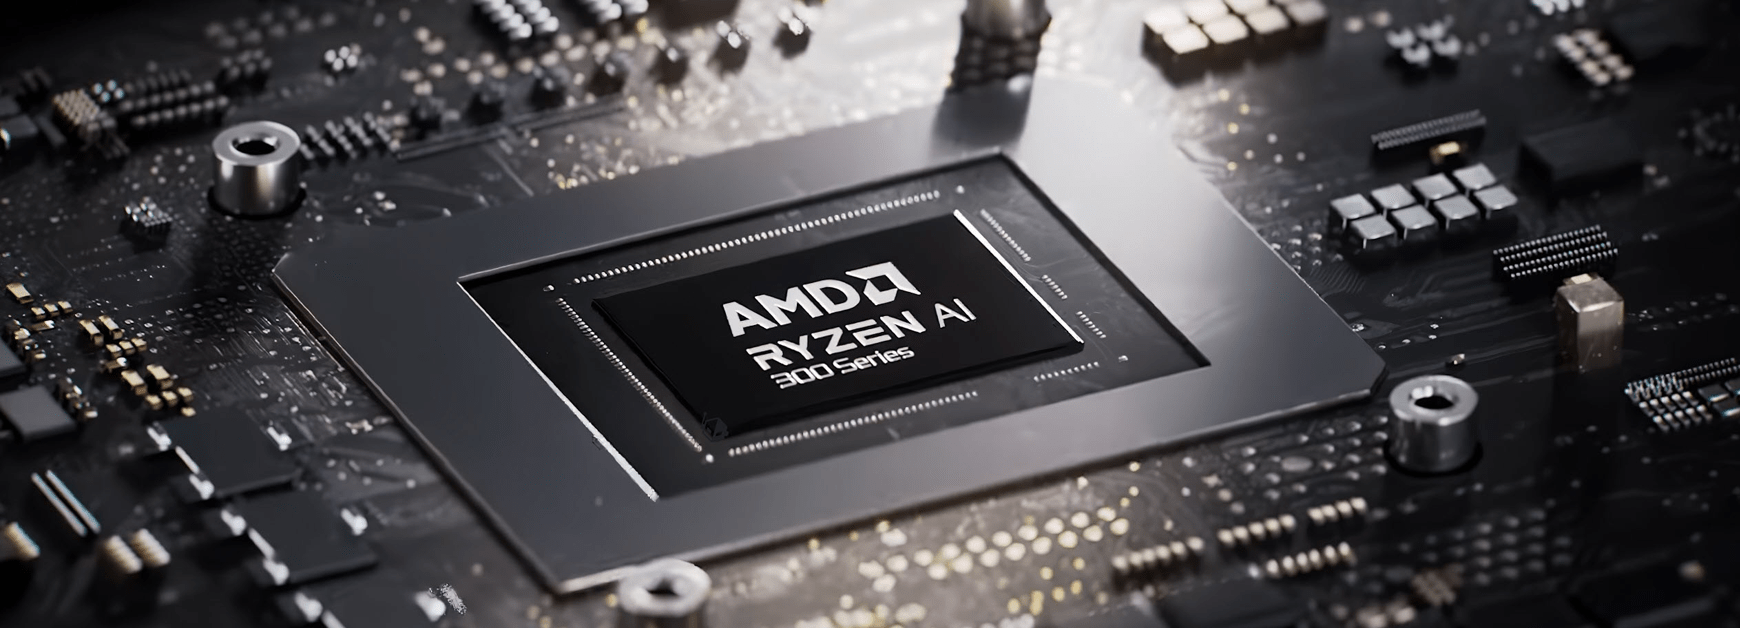 Imagem de: ASUS lançará laptops de próxima geração com AMD Ryzen AI 300 este mês